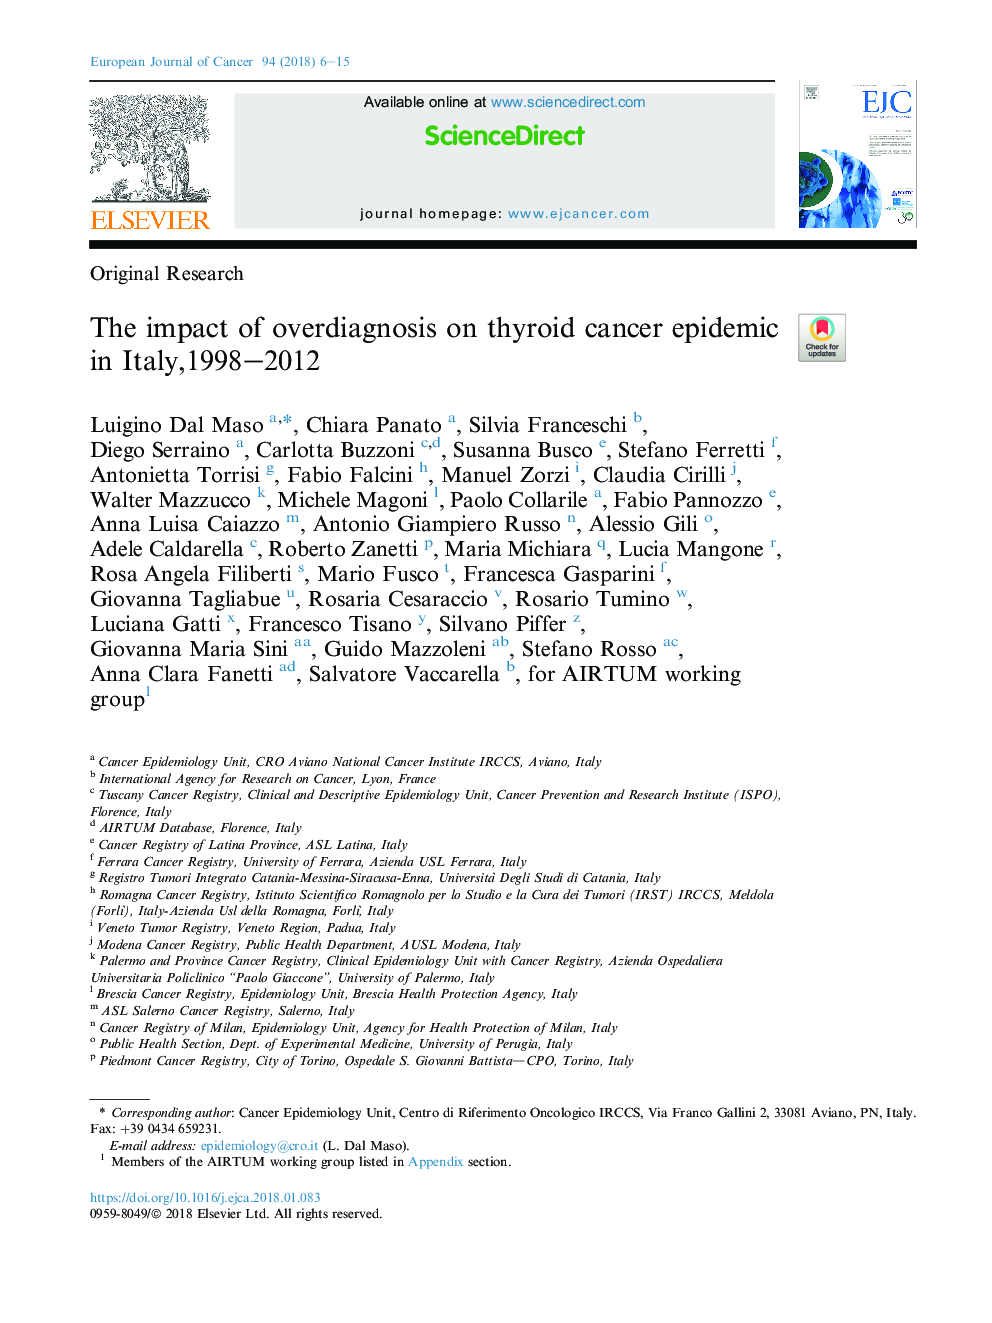 تأثیر تشخیص بیش از حد بر اپیدمی های سرطان تیروئید در ایتالیا، 1998-2012 